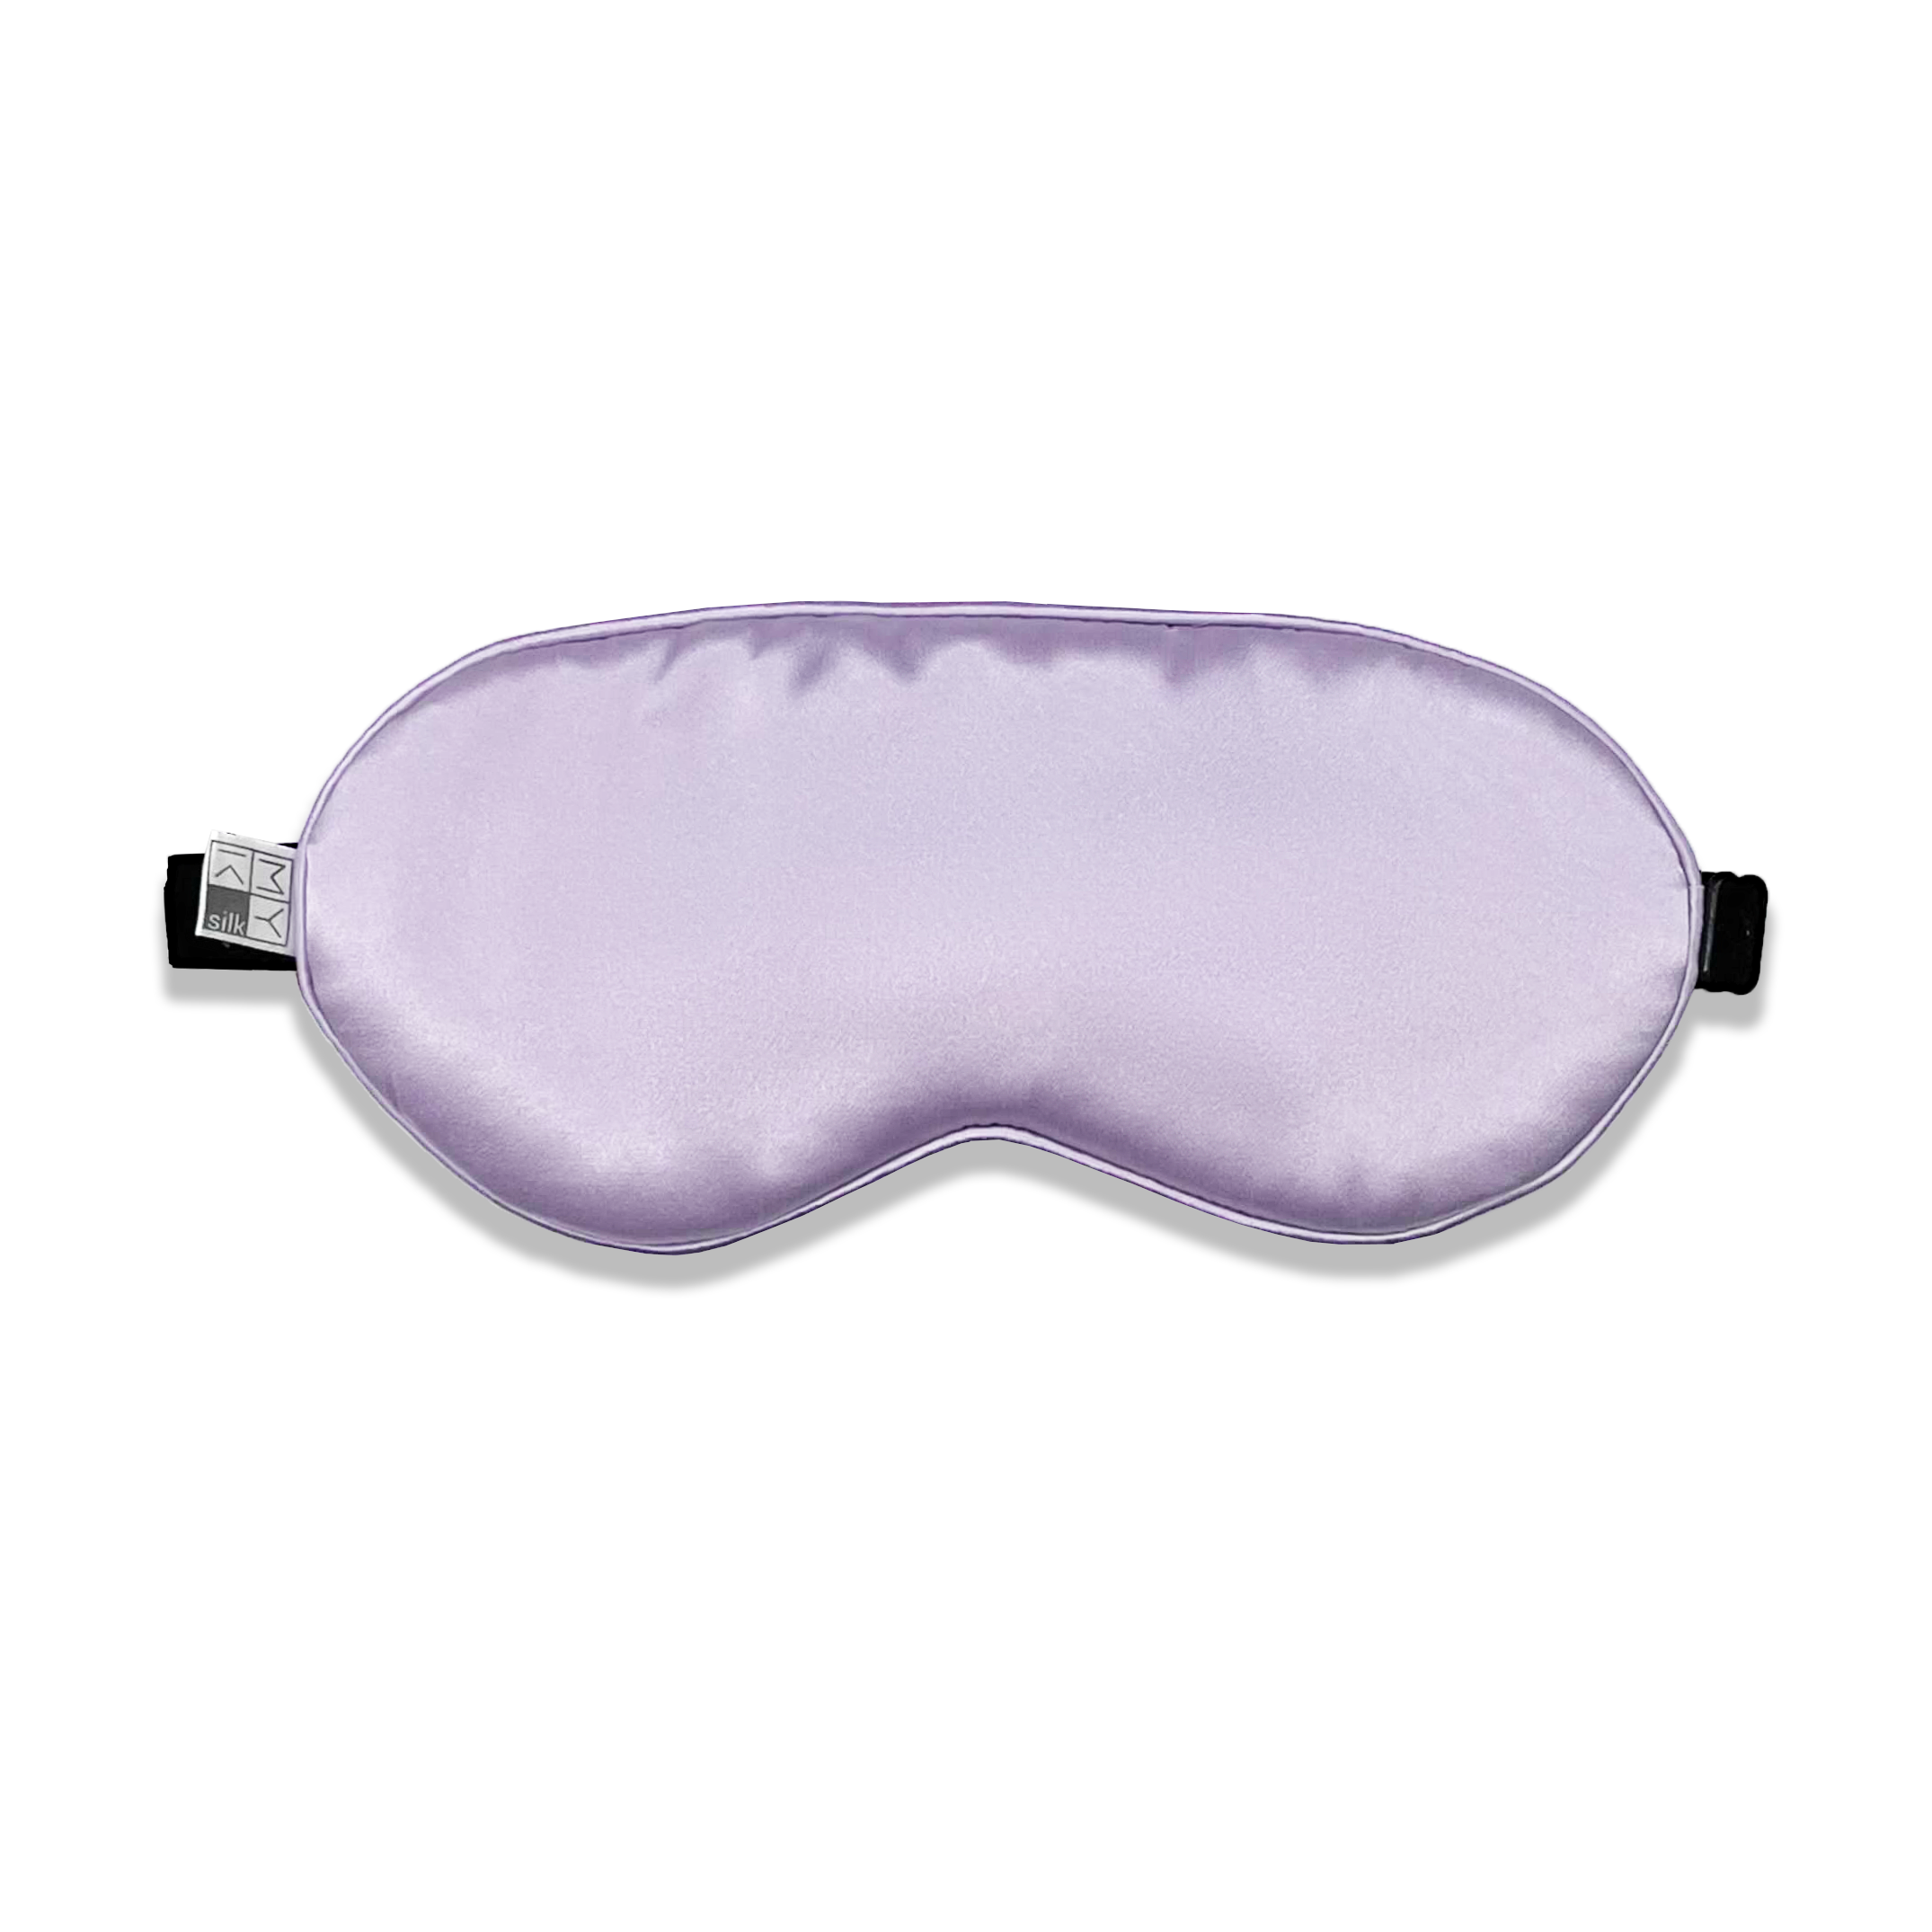 Beauty Silk Eye Mask with Velvet Band - MYK Silk #color_lavender